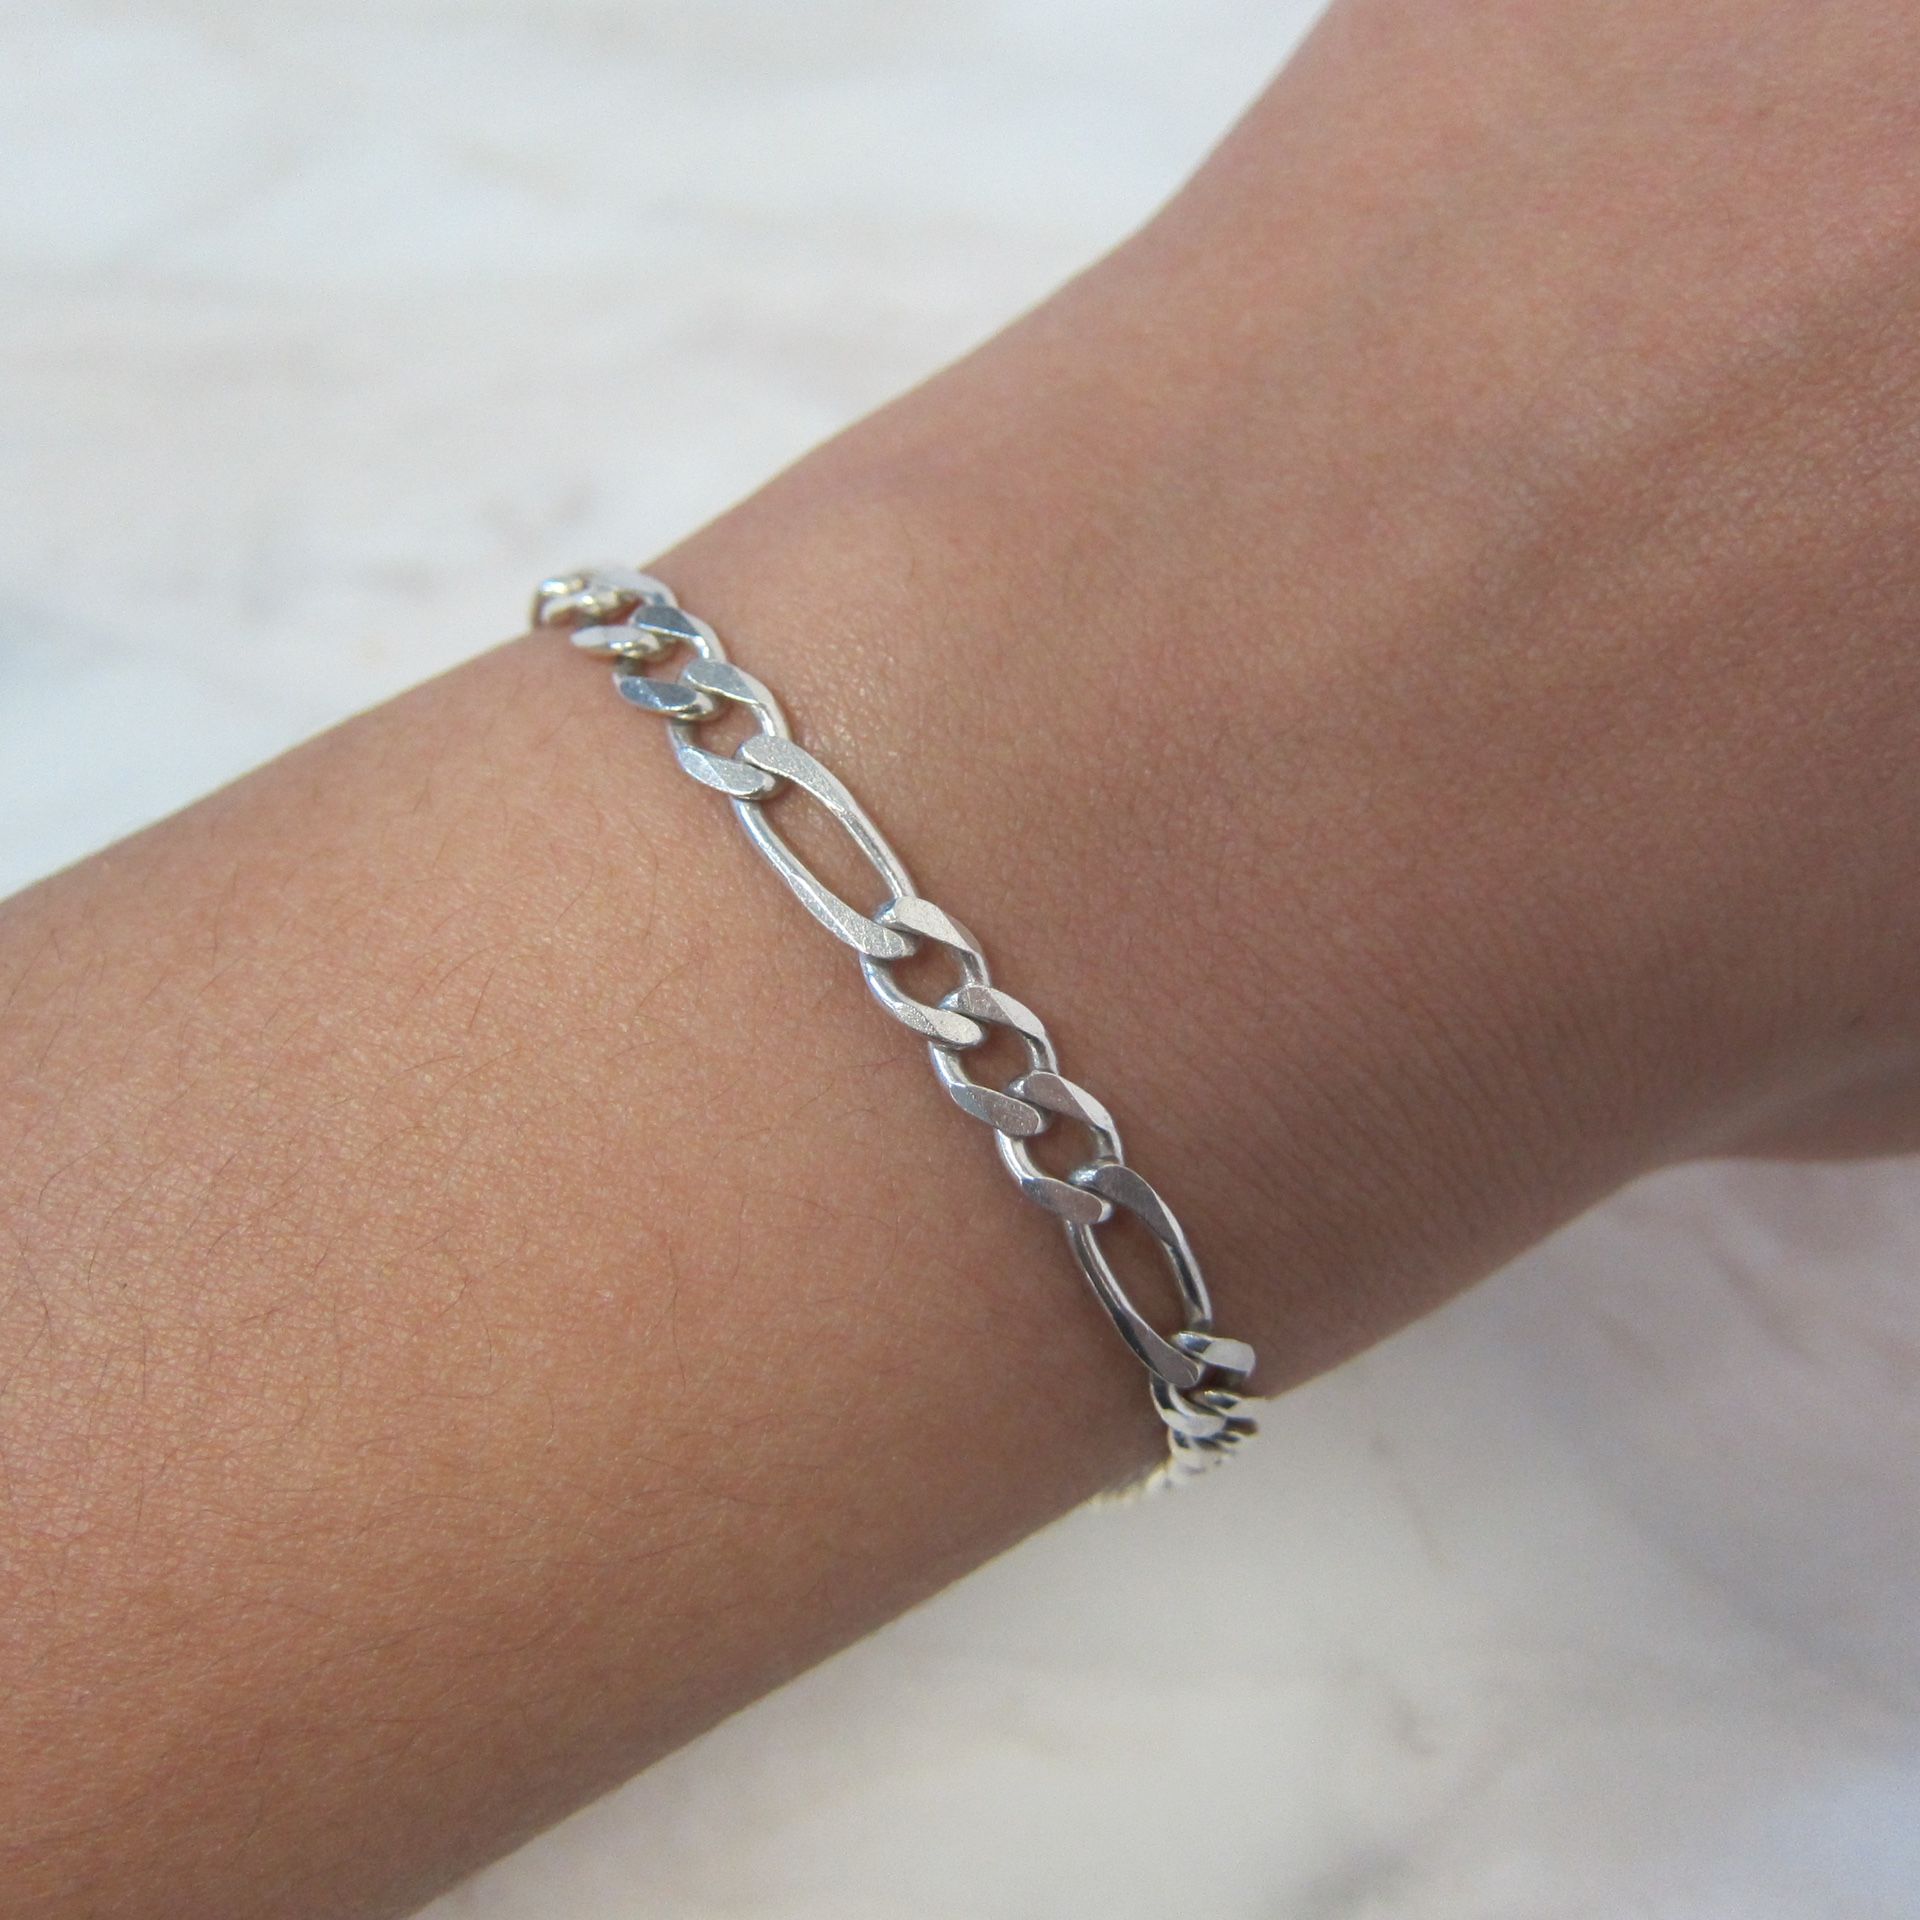 Sterling Silver Figaro Link Bracelet